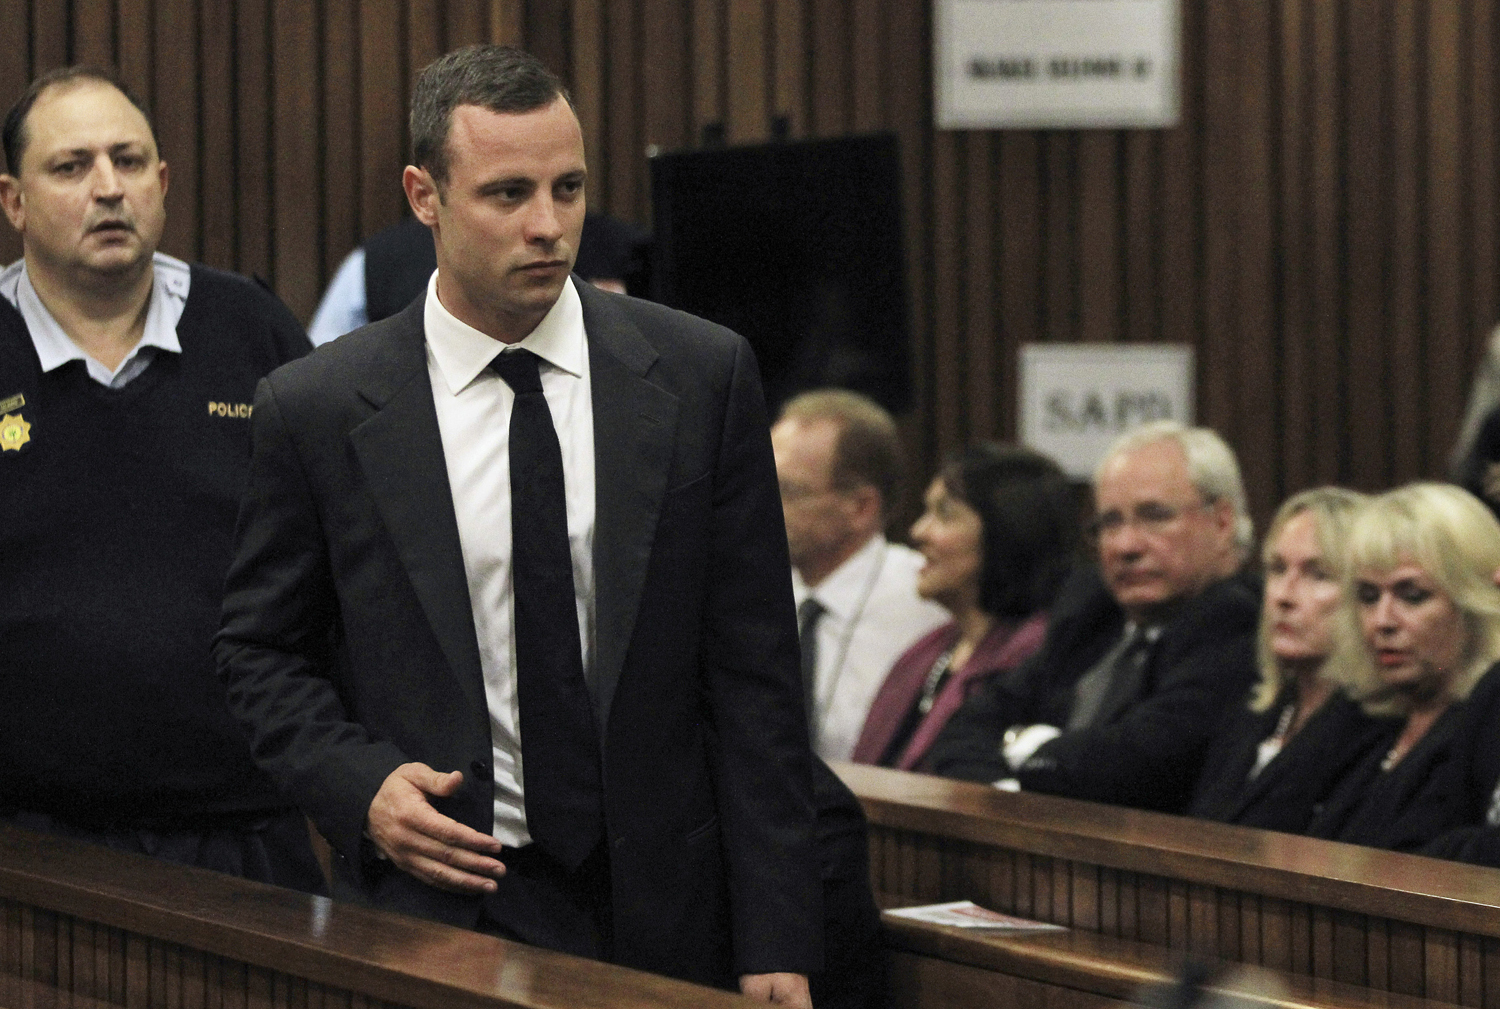 Pistorius arrives in court ahead of his trial in Pretoria